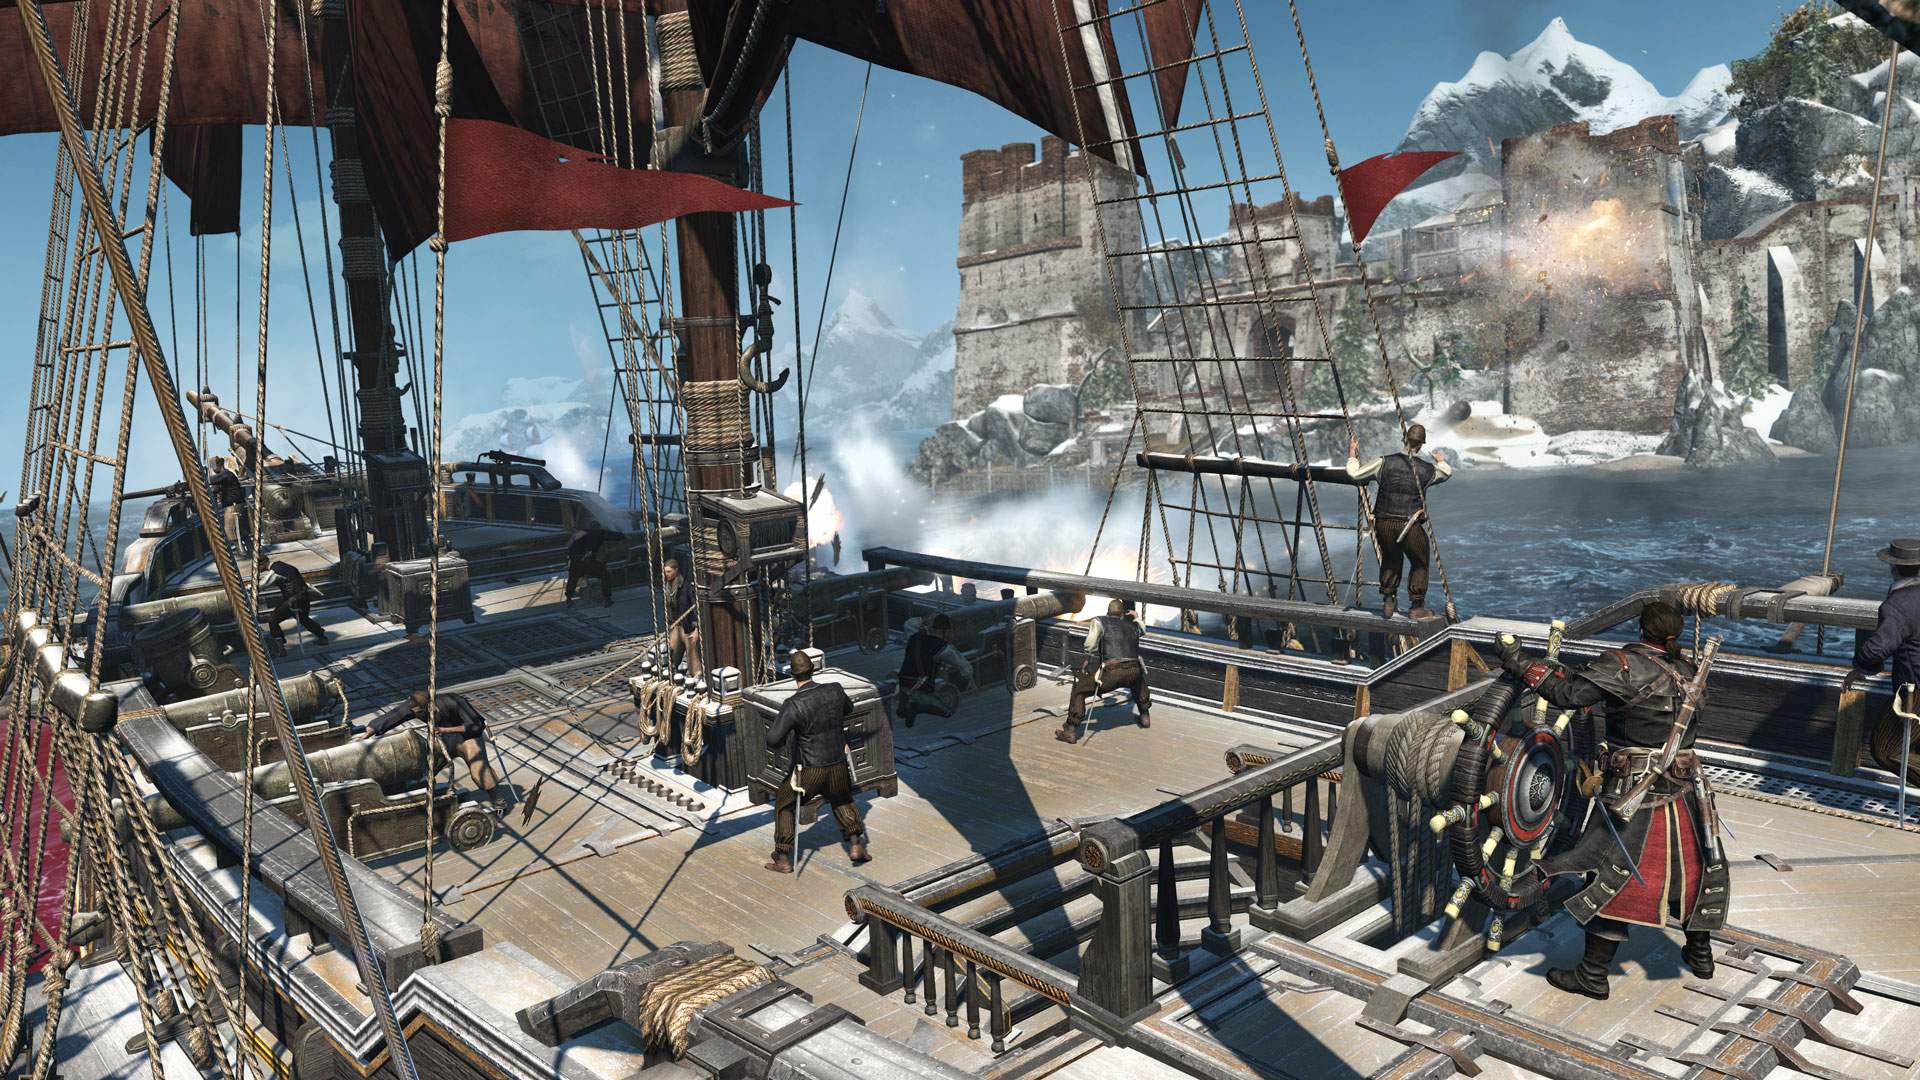 Immagine pubblicata in relazione al seguente contenuto: Ubisoft promette gameplay in 4K con Assassin's Creed Rogue Remastered | Nome immagine: news27685_Assassin-s-Creed-Rogue-Remastered-Screenshot_2.jpg